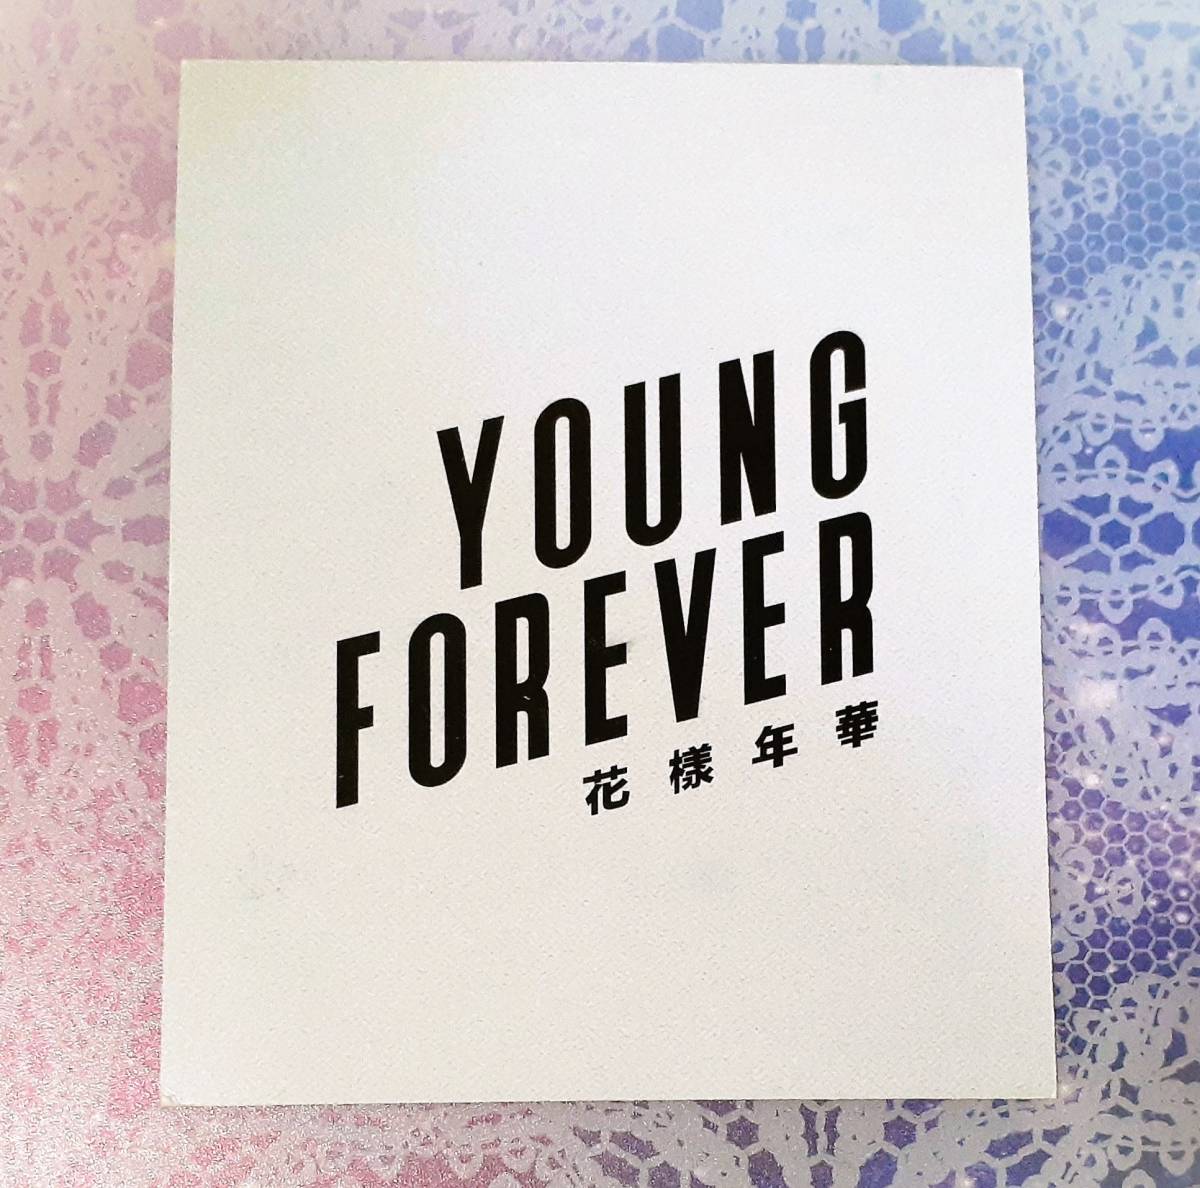 公式 BTS 花様年華 Young Forever ポラロイド トレカ 防弾少年団 フォトカード ジミン V ジョングク オール_画像2